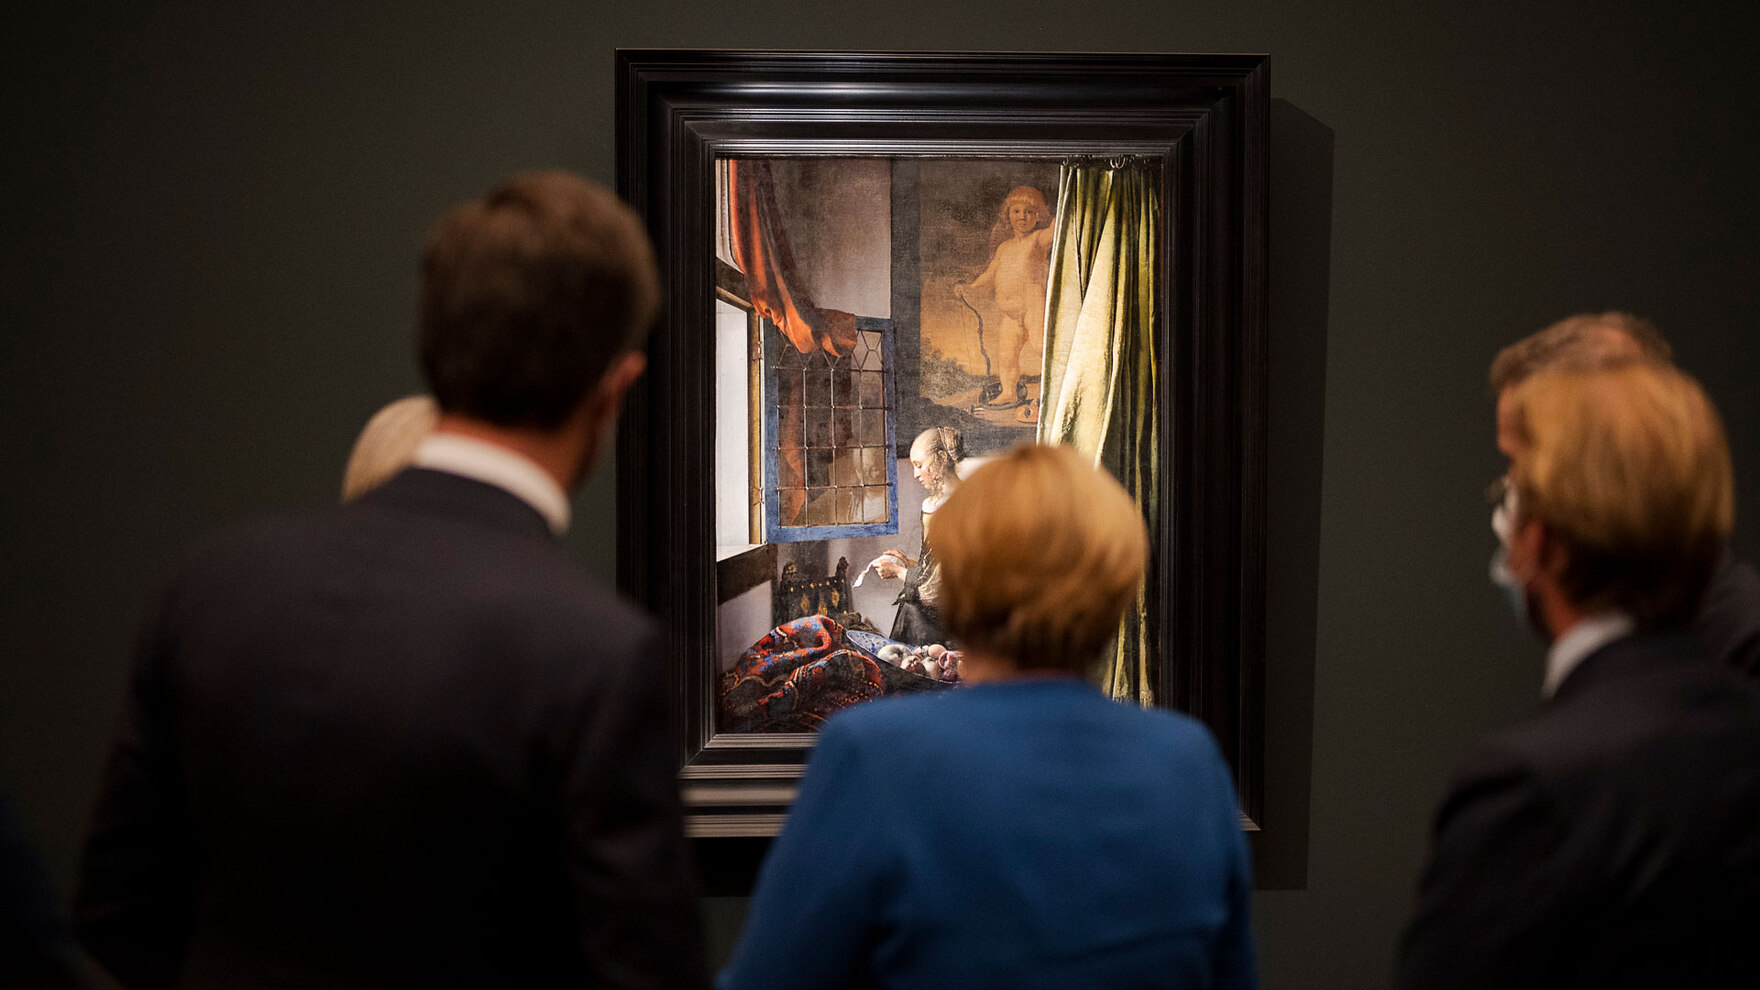 Das Gemälde des briefelesenden Mädchens von Johannes Vermeer wird von mehreren Personen betrachtet.